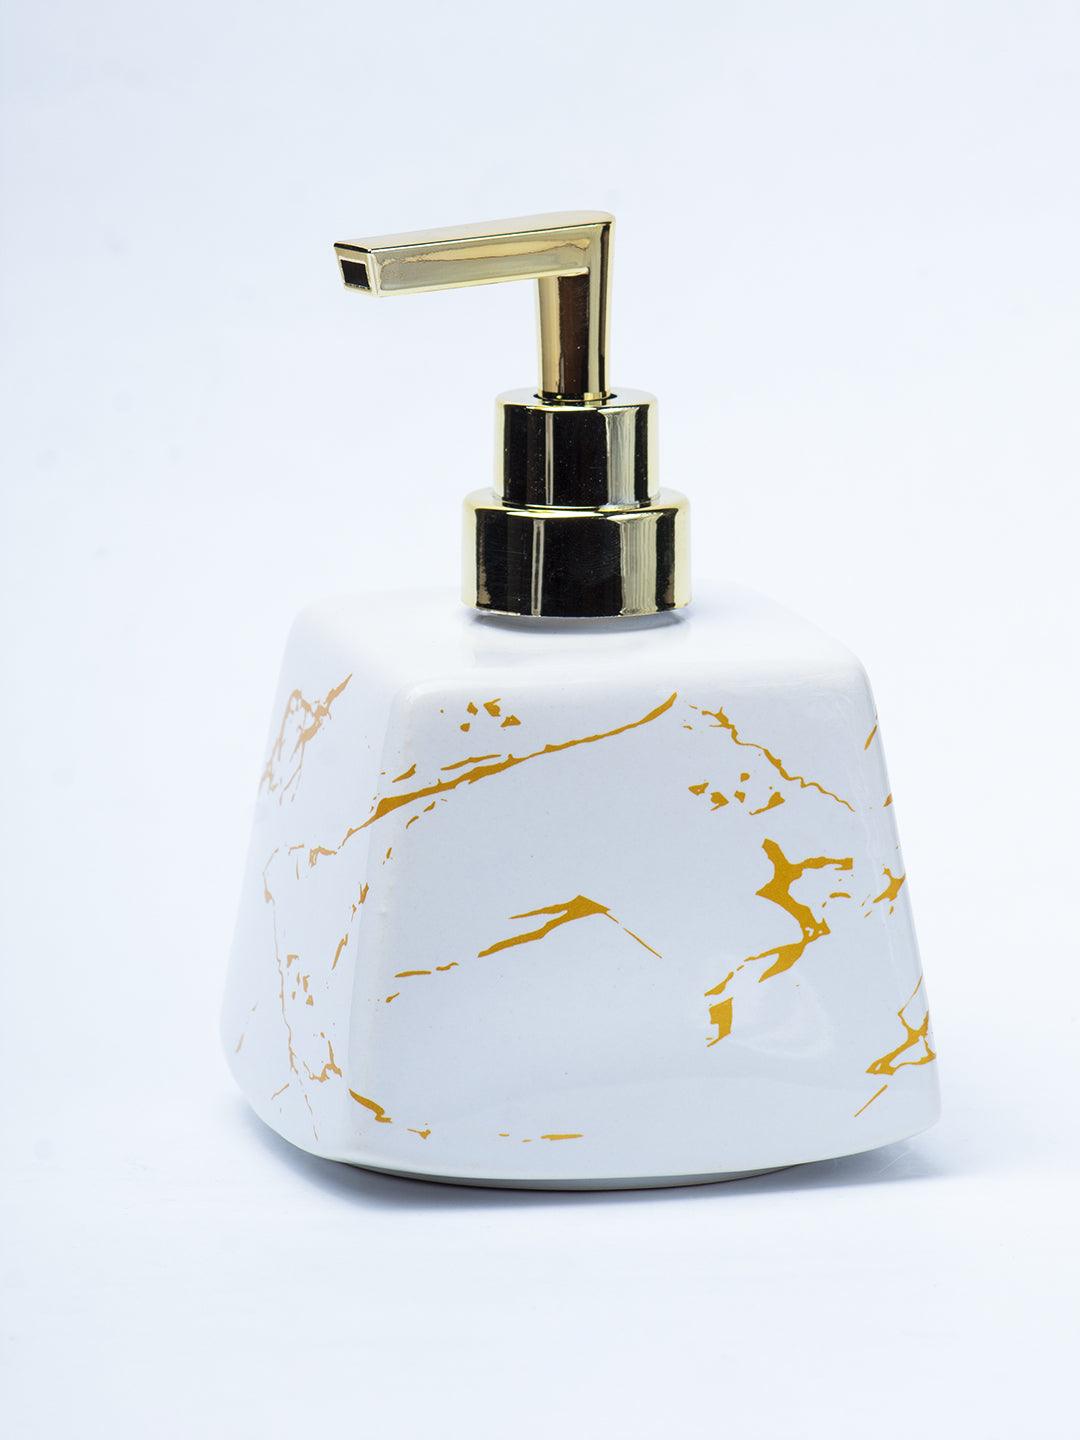 White Ceramic Soap Dispenser - Stone Finish, Bath Accessories - 2